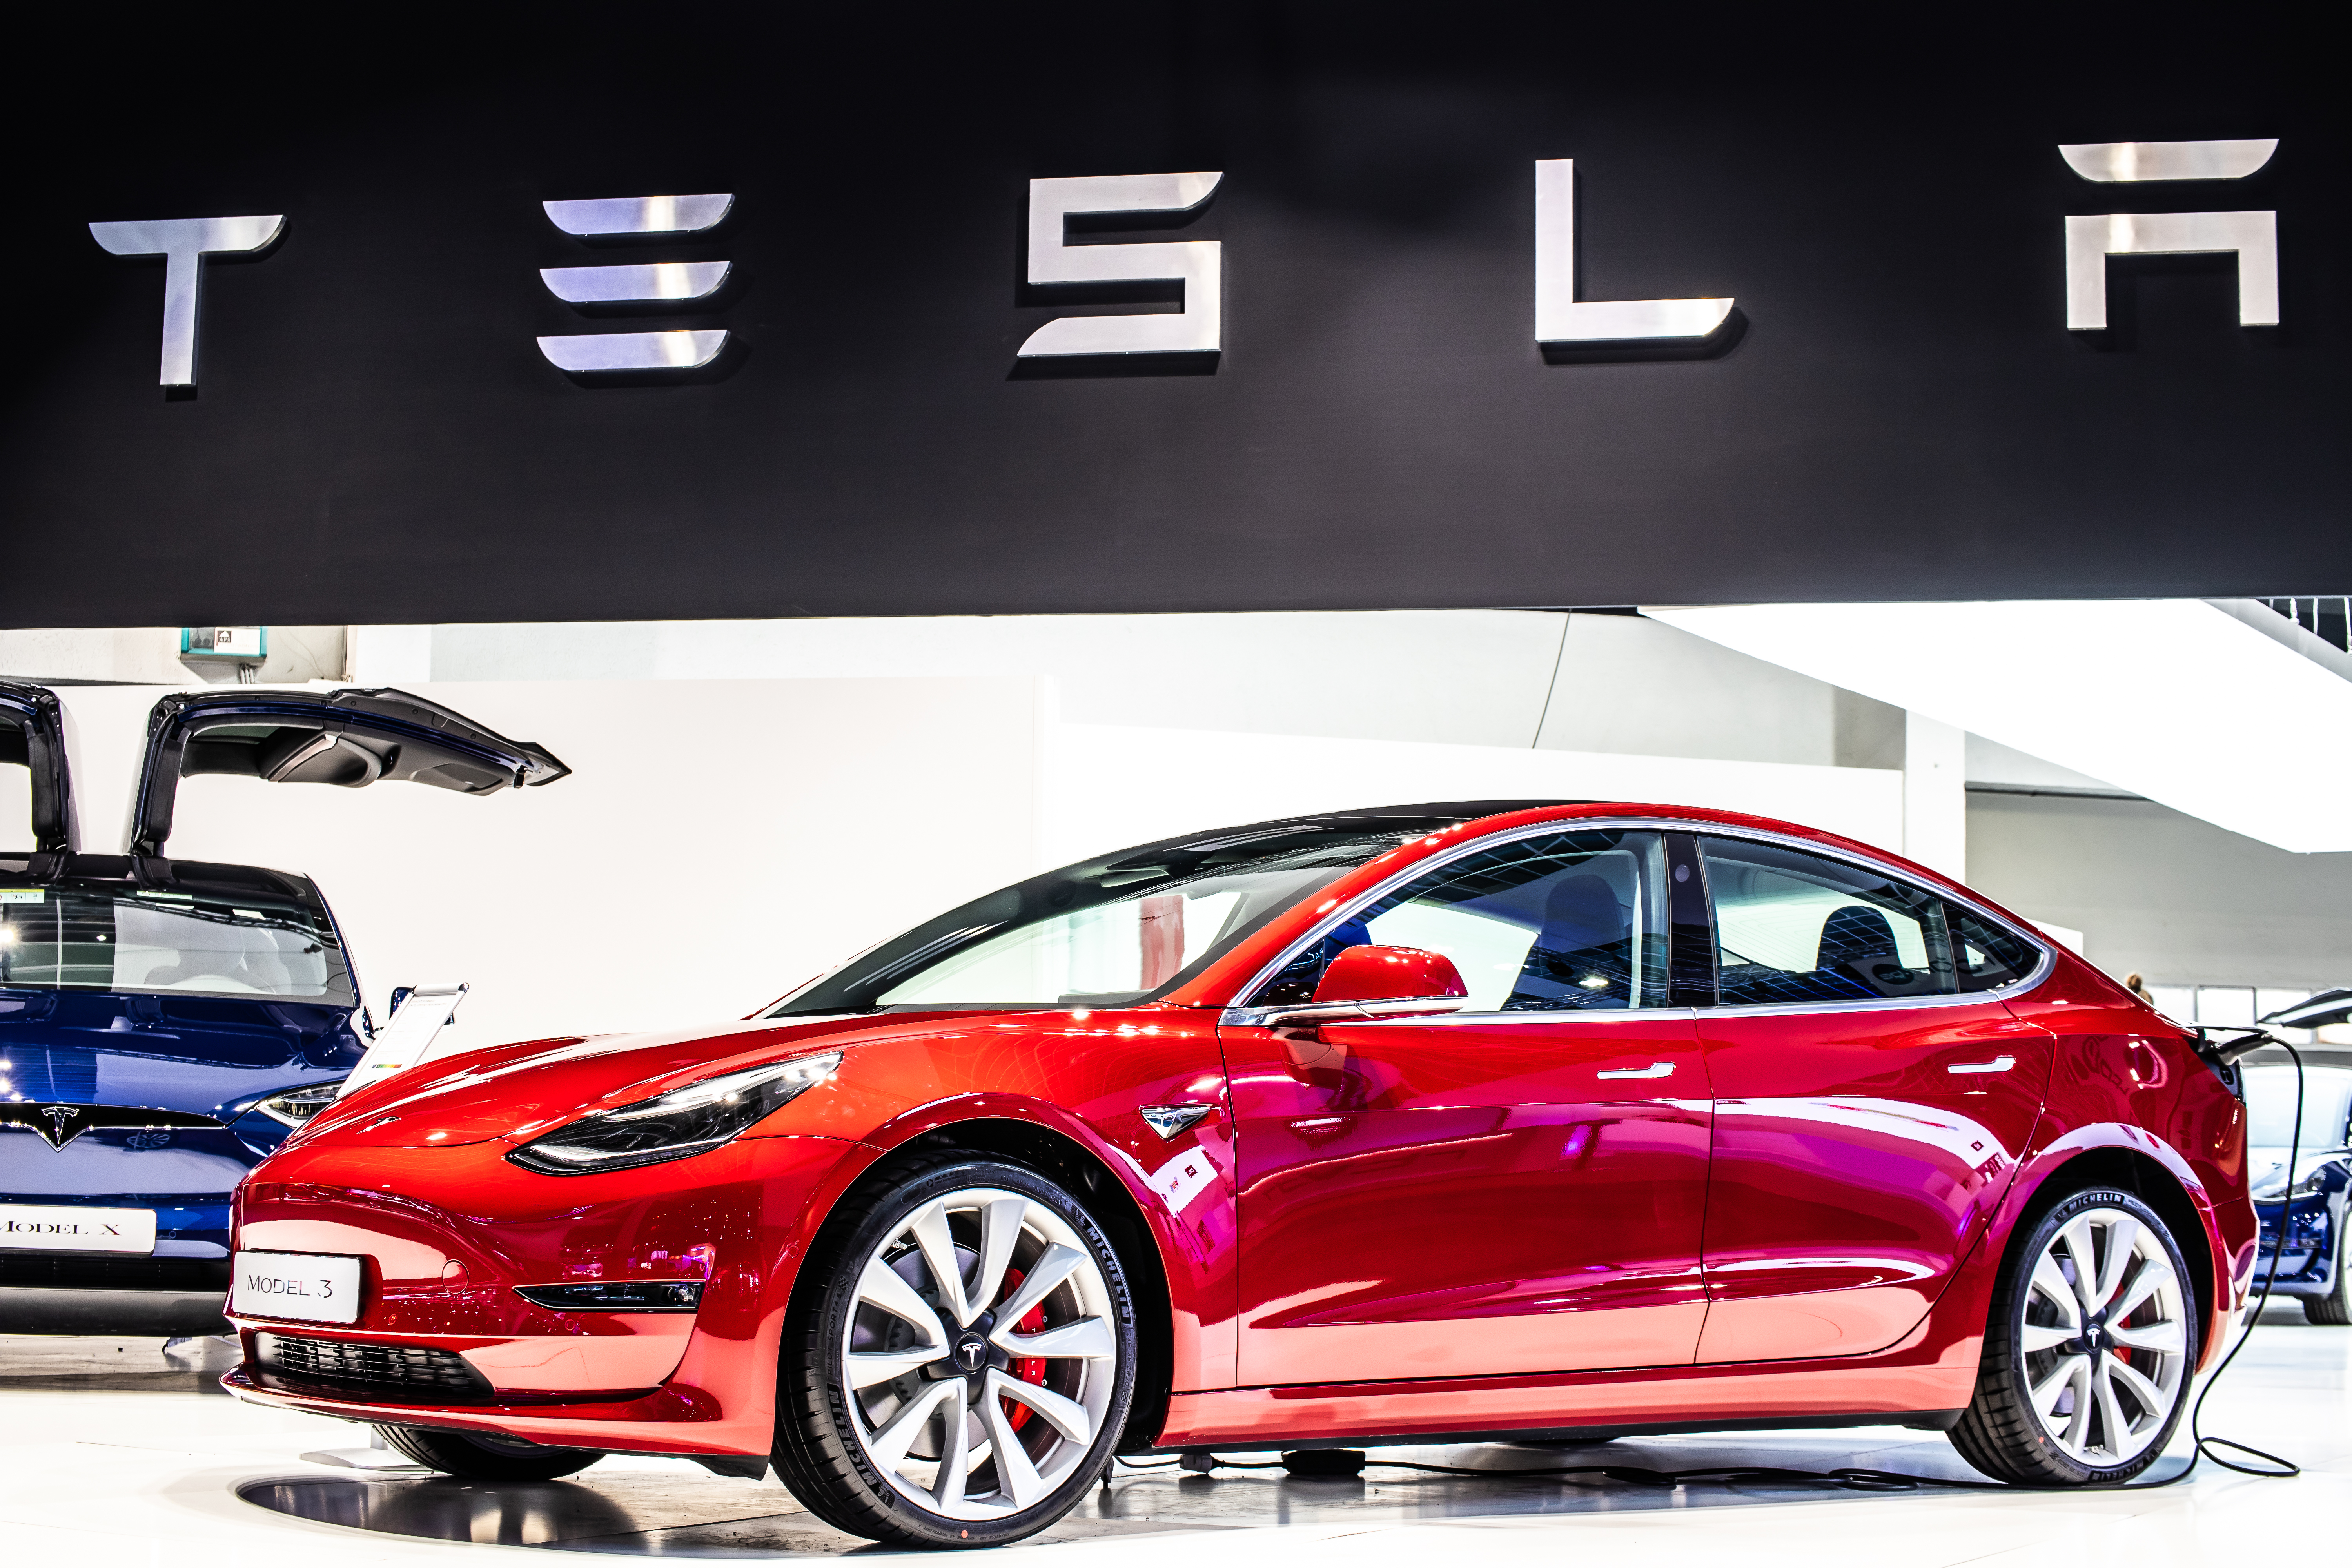 Apresentação do Model 3 em uma feira de carros. O veículo é vermelho e há um banner da Tesla na parte superior da imagem